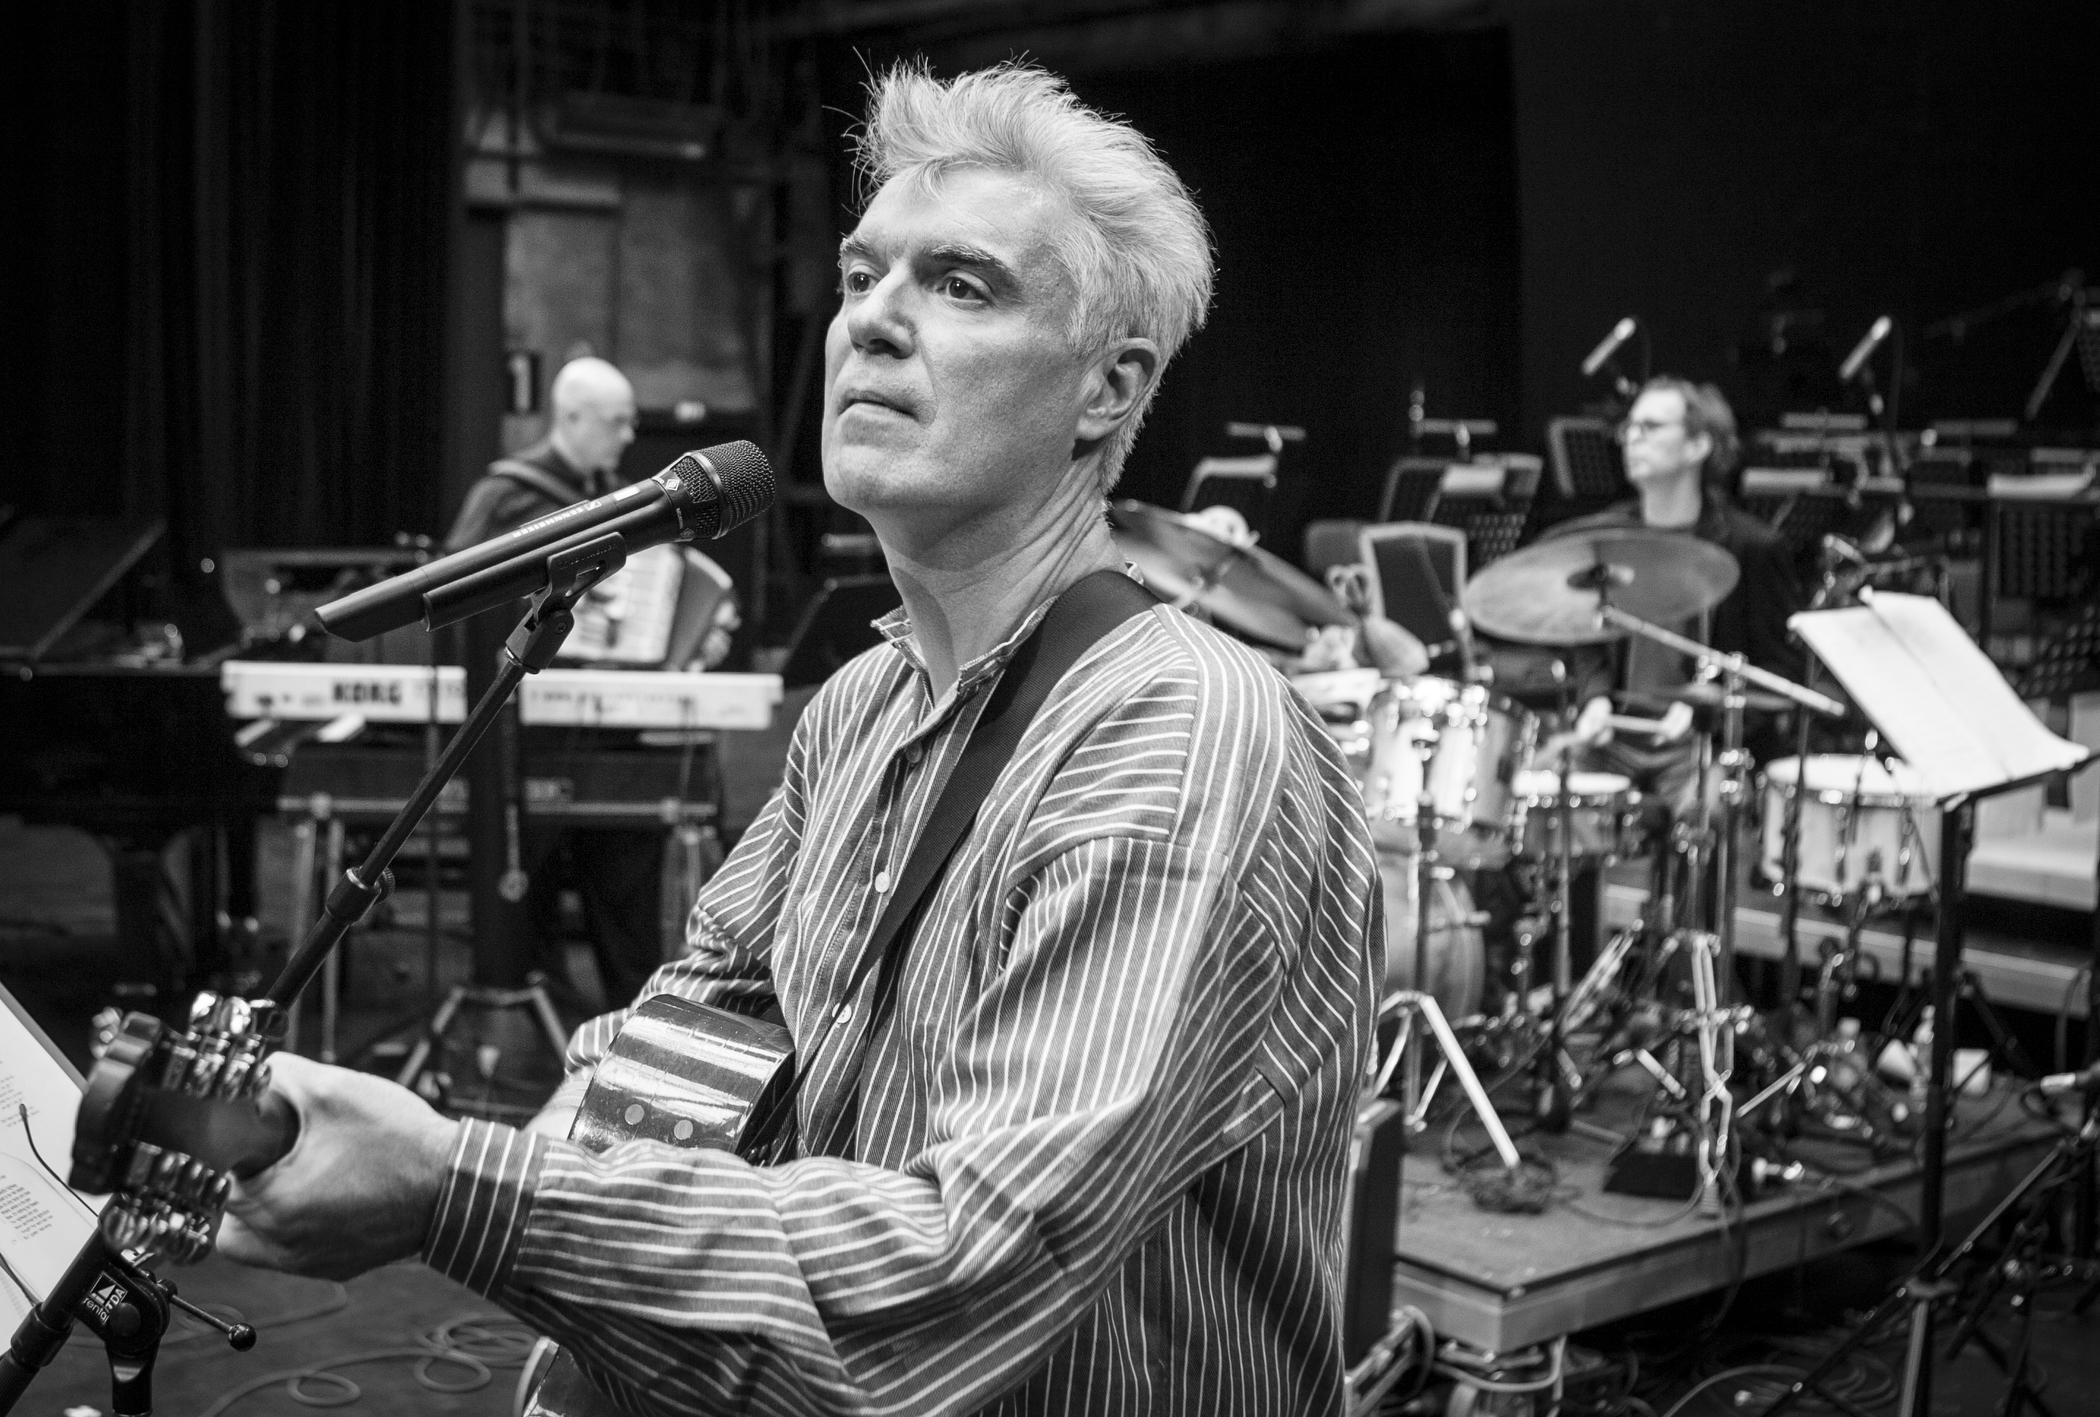    David Byrne  , Musician, Rehearsals, Ruhrtriennale, Bochum, Germany 